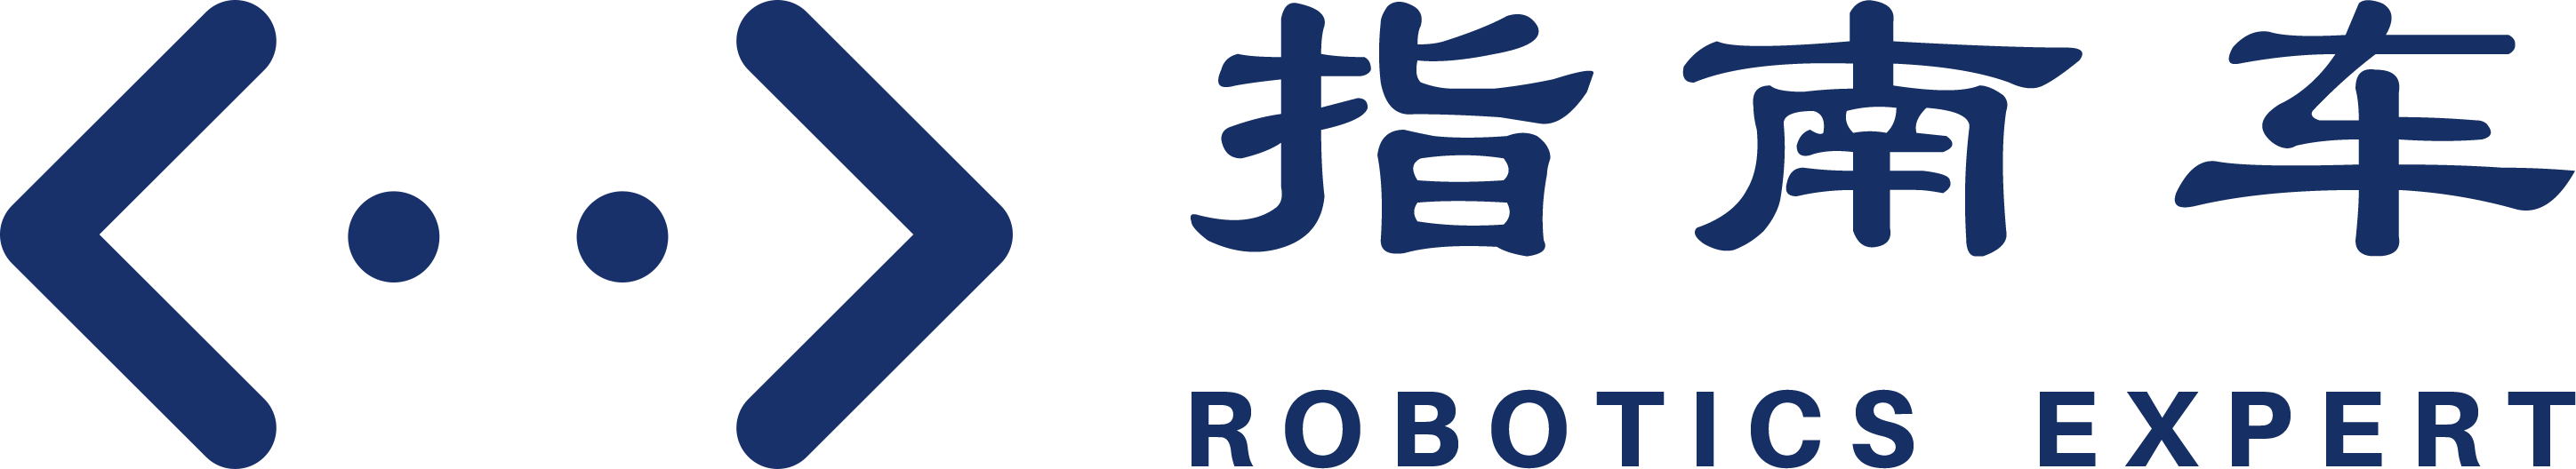 杭州指南车机器人科技有限公司